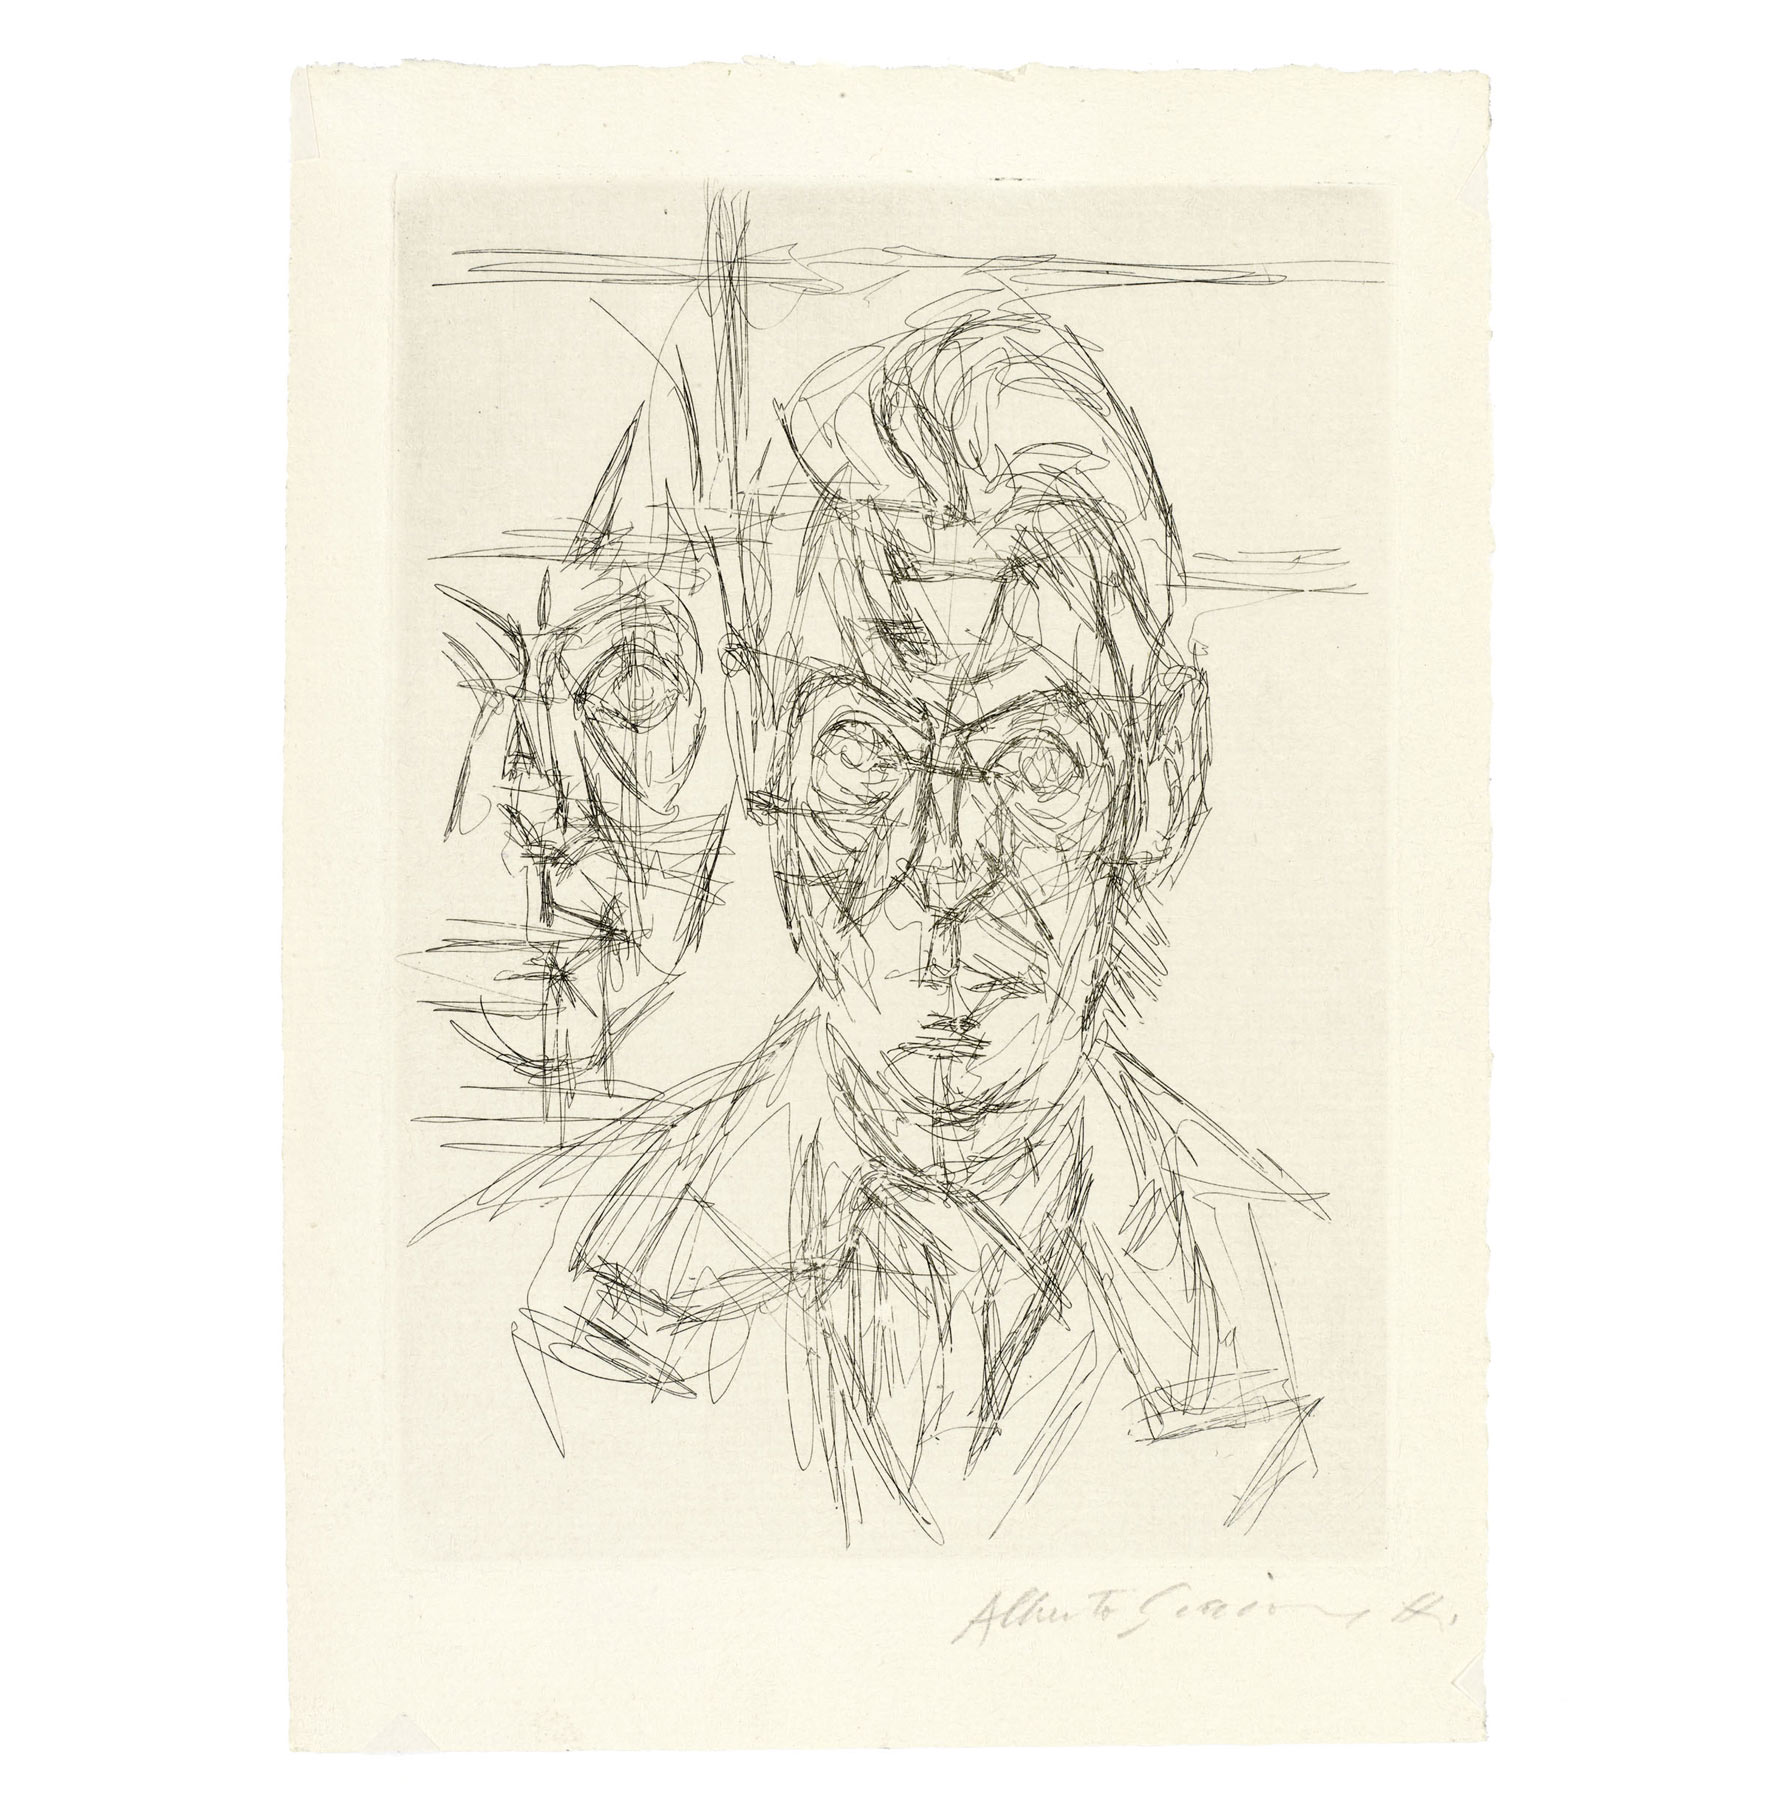 L'intero corpus grafico di Alberto Giacometti va in mostra per la prima volta: oltre 400 fogli esposti